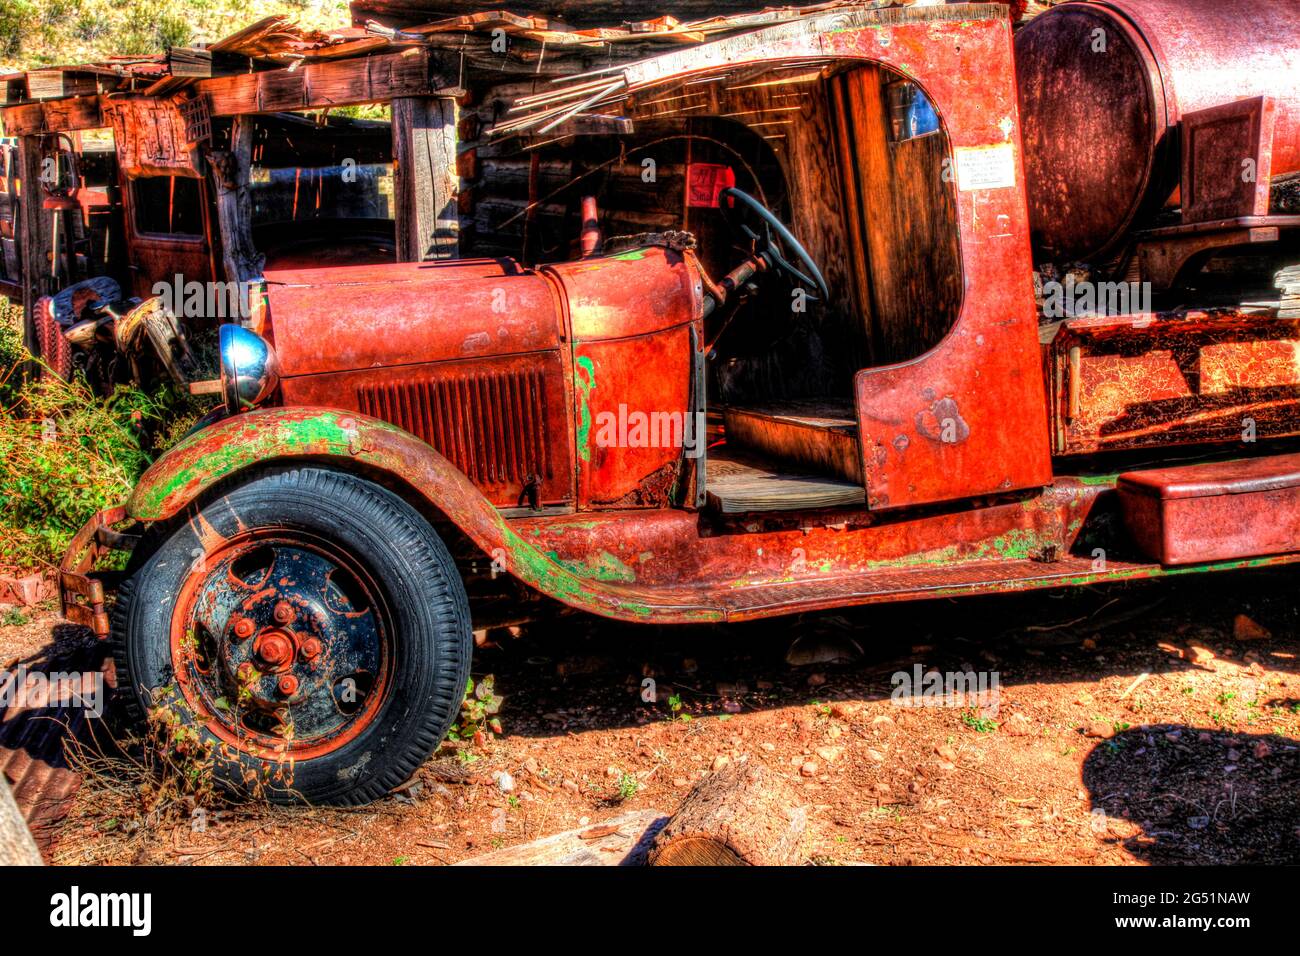 Rusty trucks at junkyard, Jerome, Arizona, USA Stock Photo